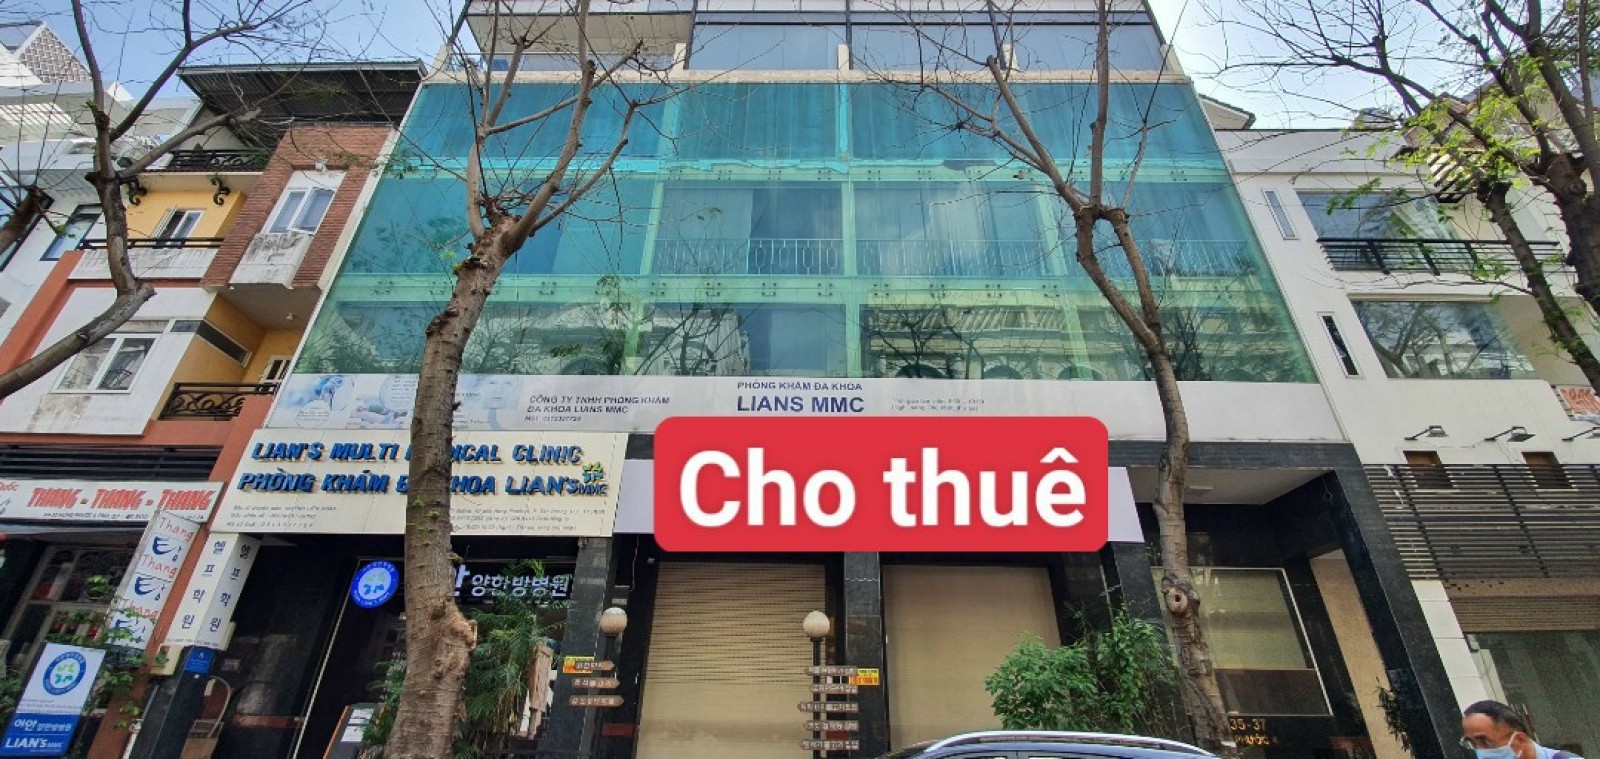 Cho thuê tòa nhà văn phòng 3 căn liền nhau gần Sky Garden Phú Mỹ Hưng, Q7.